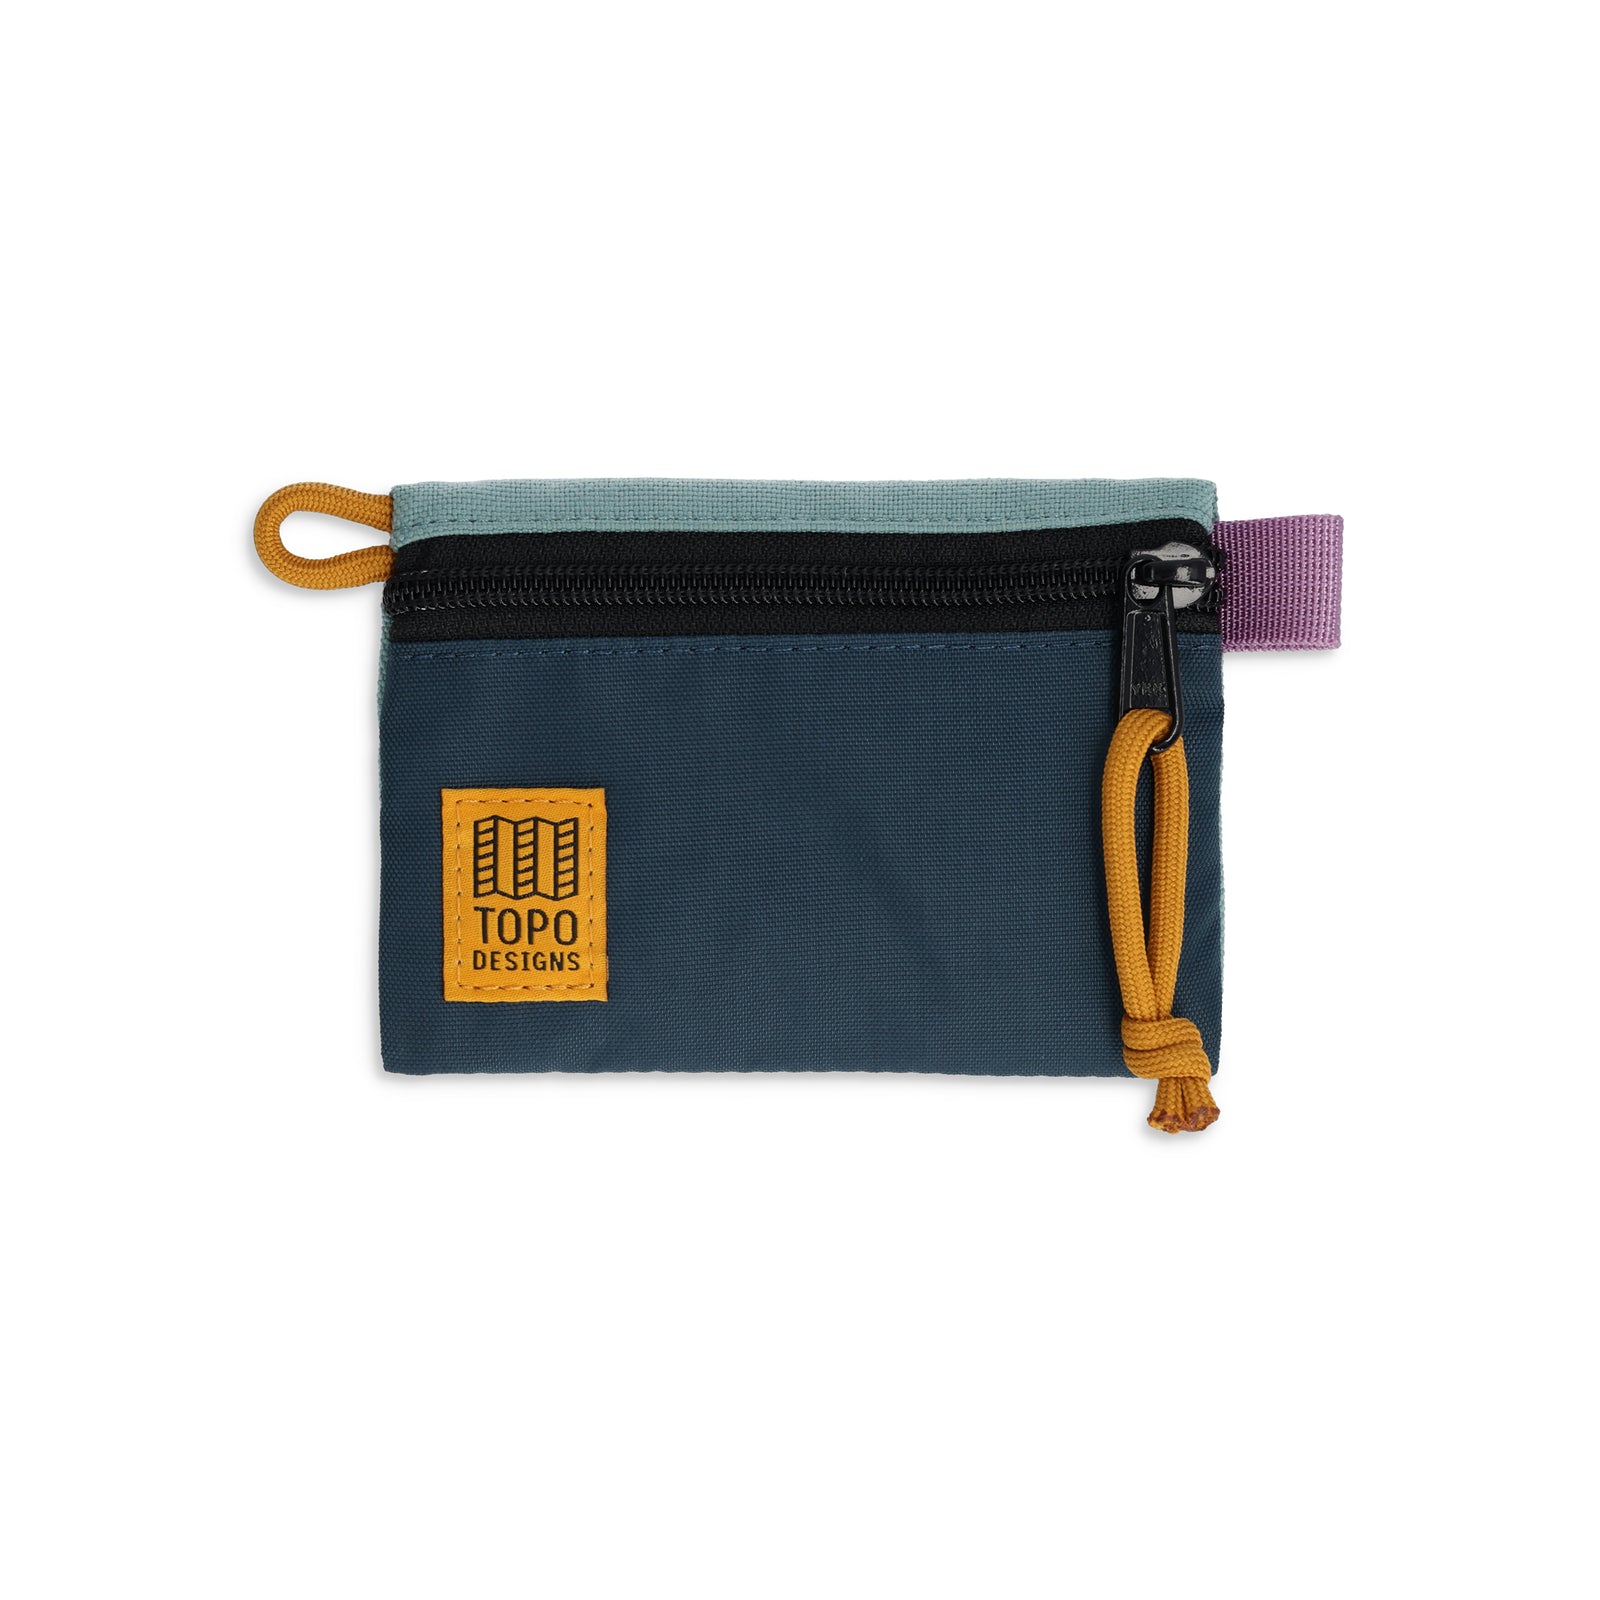 Topo Designs Accessory Bag "Micro" in "Sage / Pond Blue""